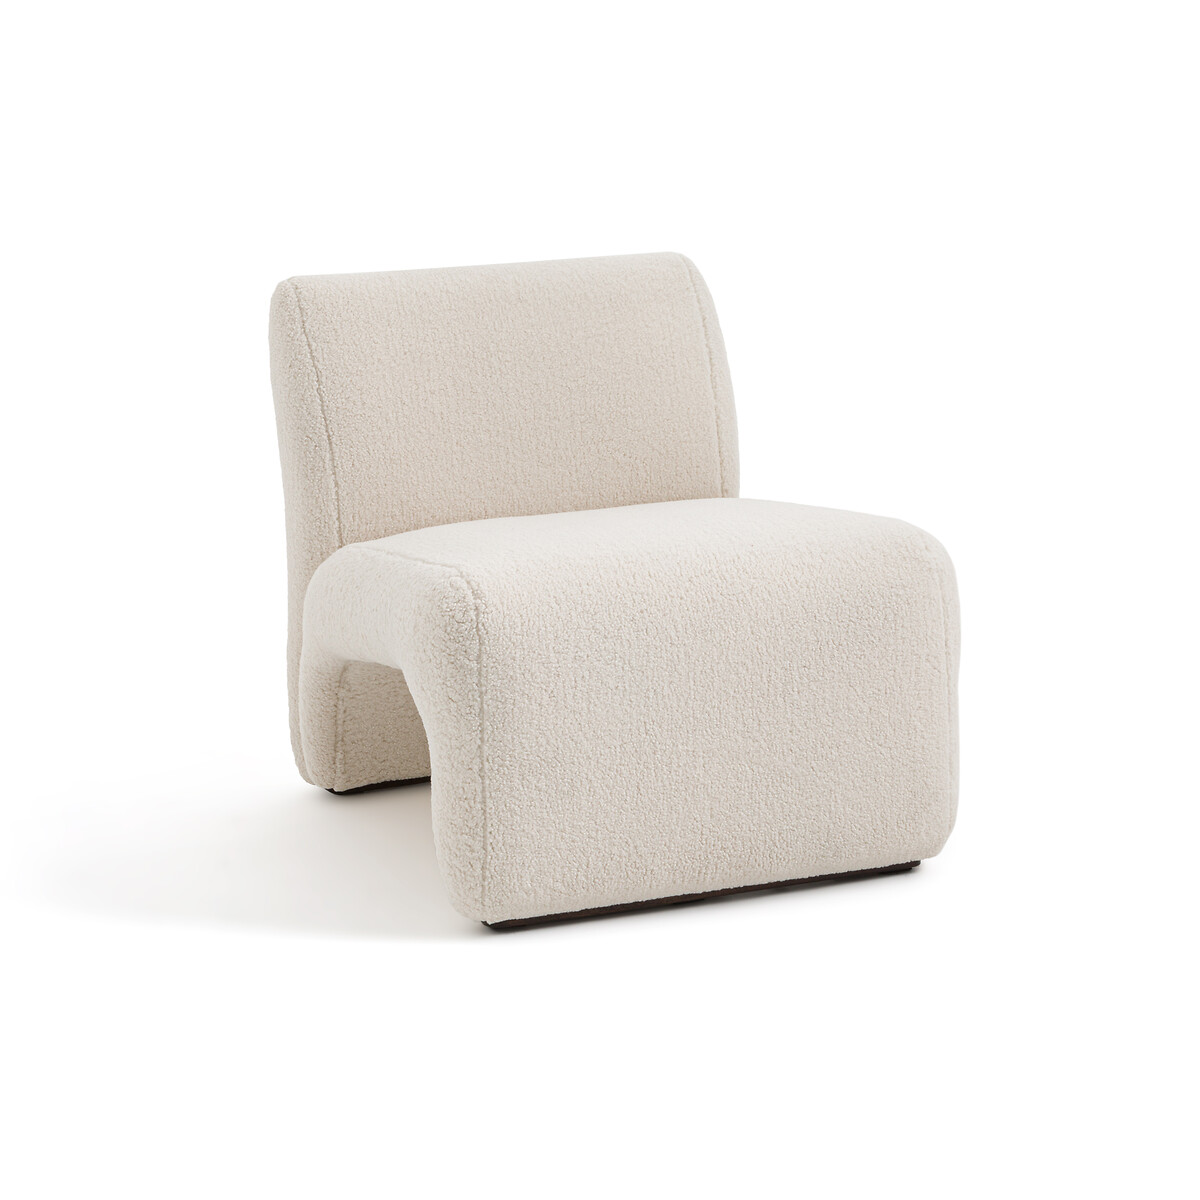 Кресло из ткани букле Olena единый размер бежевый подставка для ног из ткани букле alpine единый размер бежевый